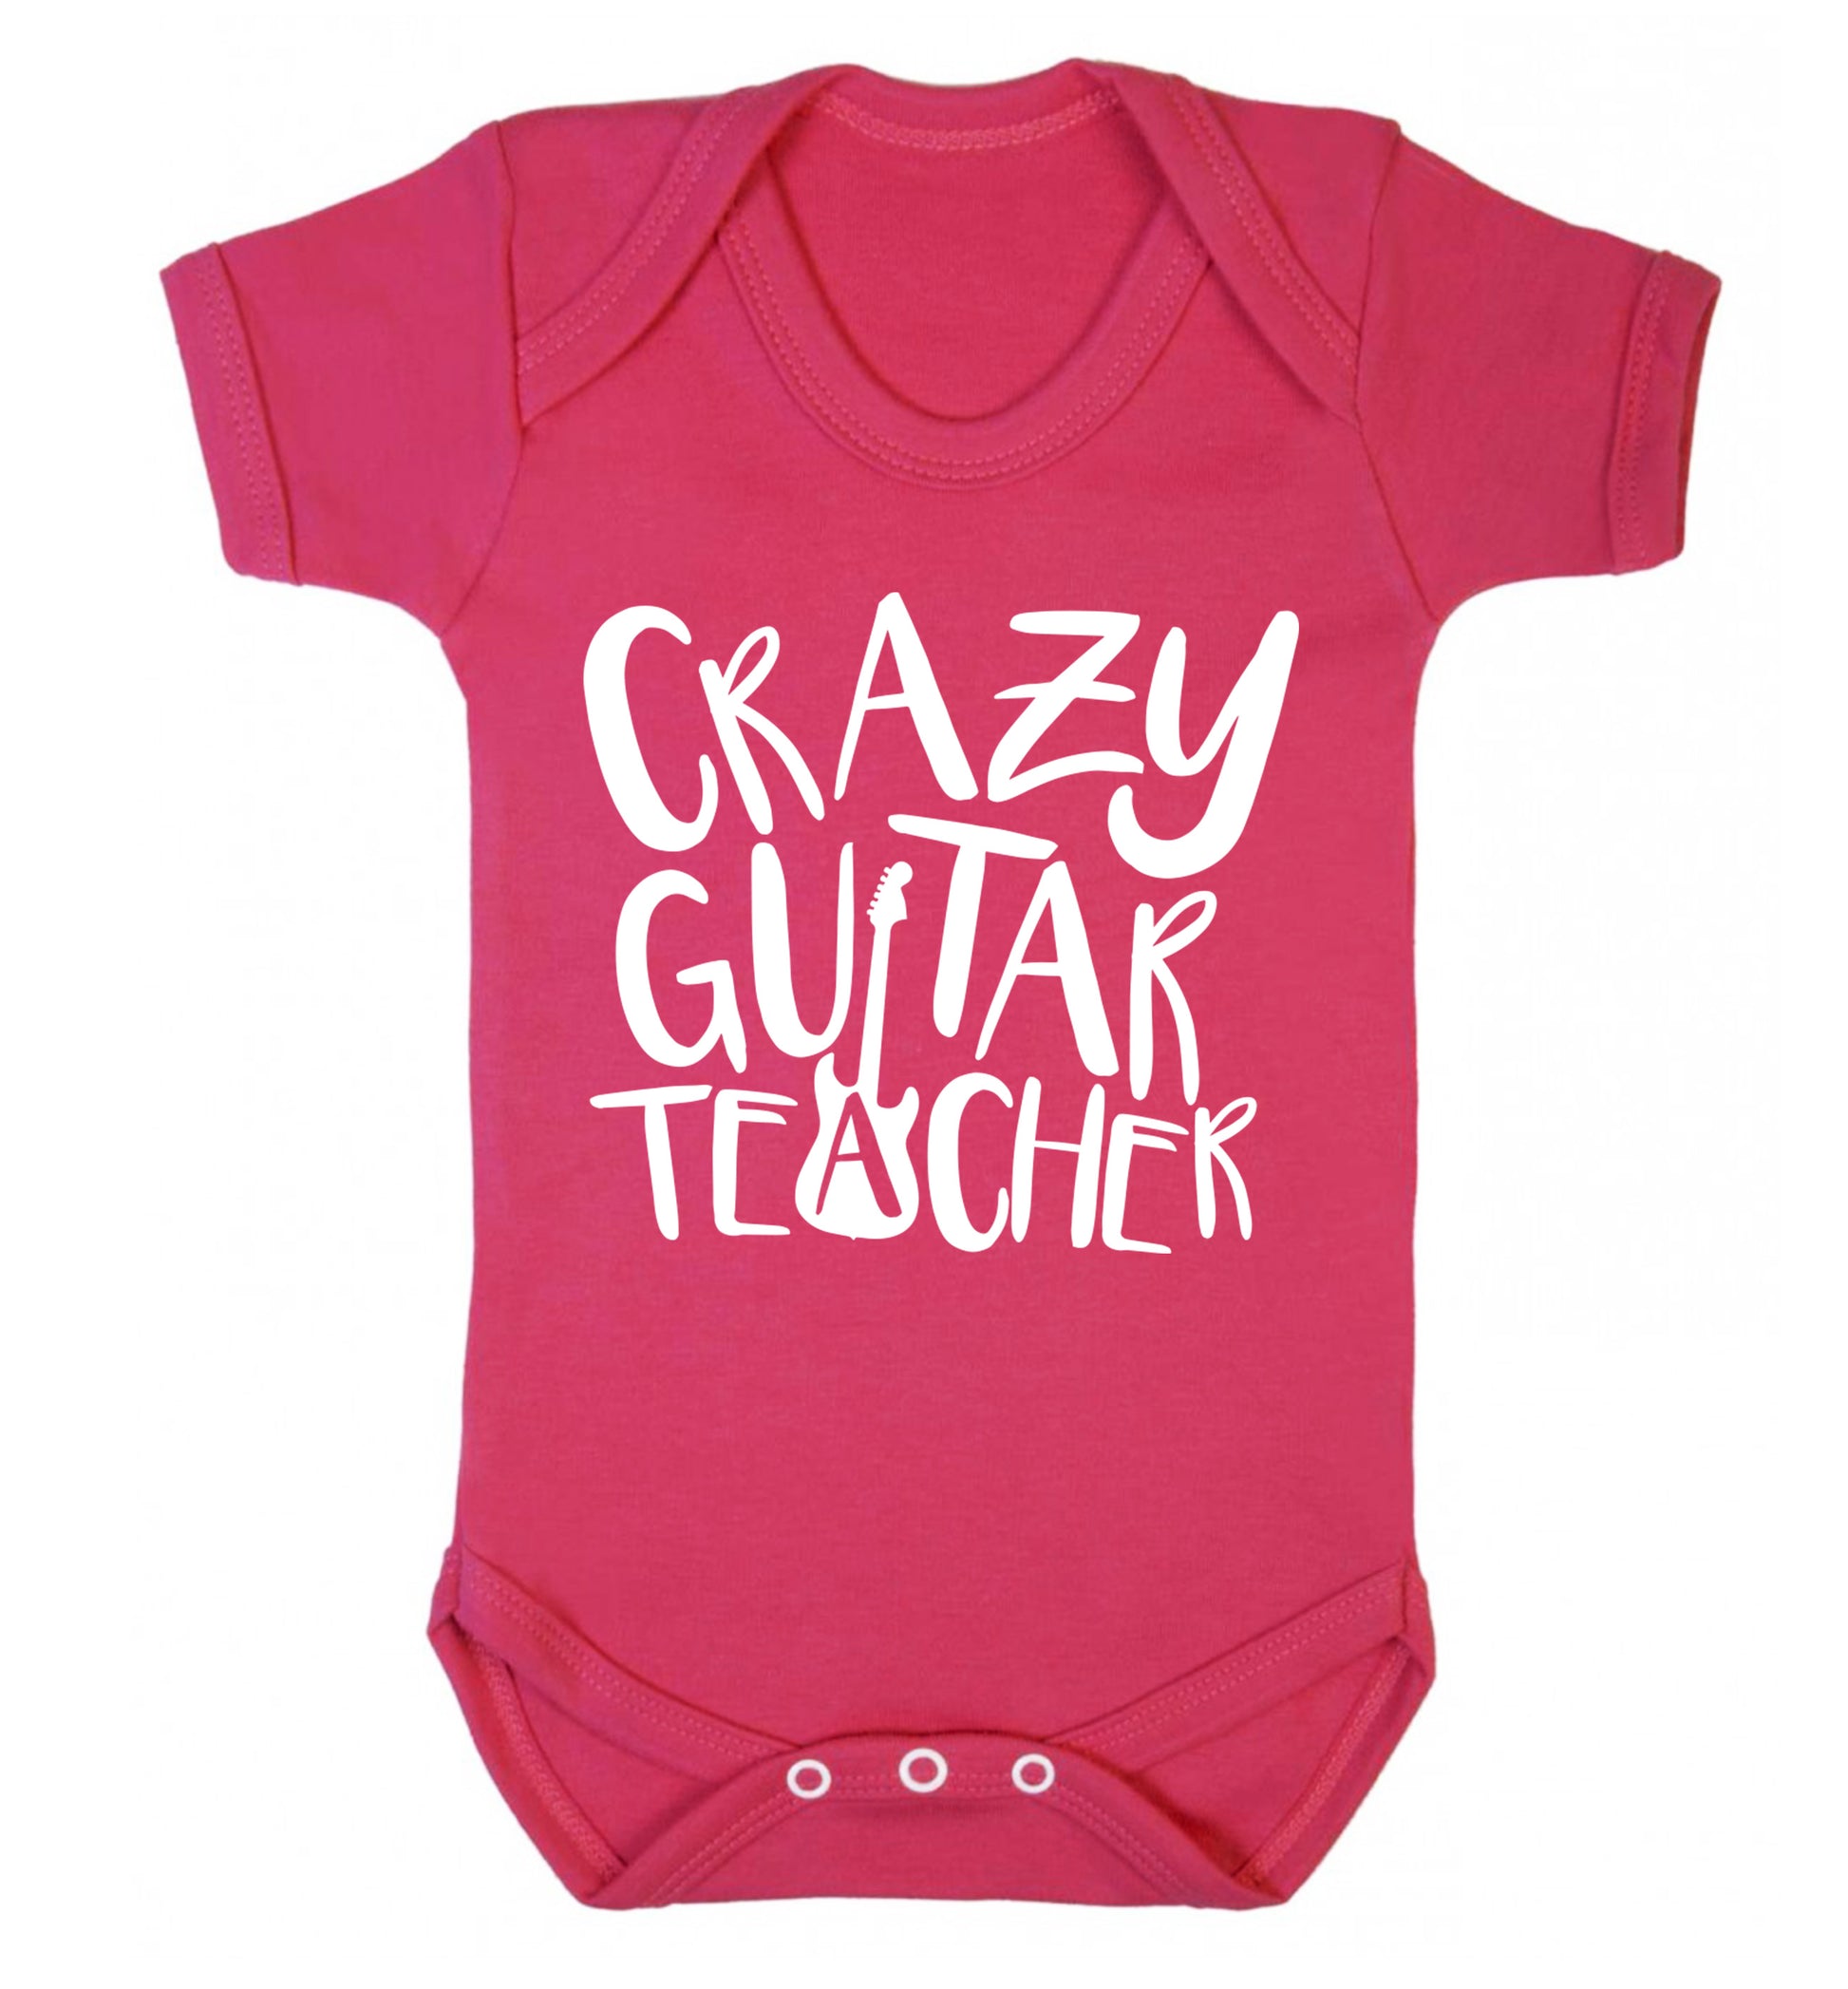 Crazy guitar teacher Baby Vest dark pink 18-24 months